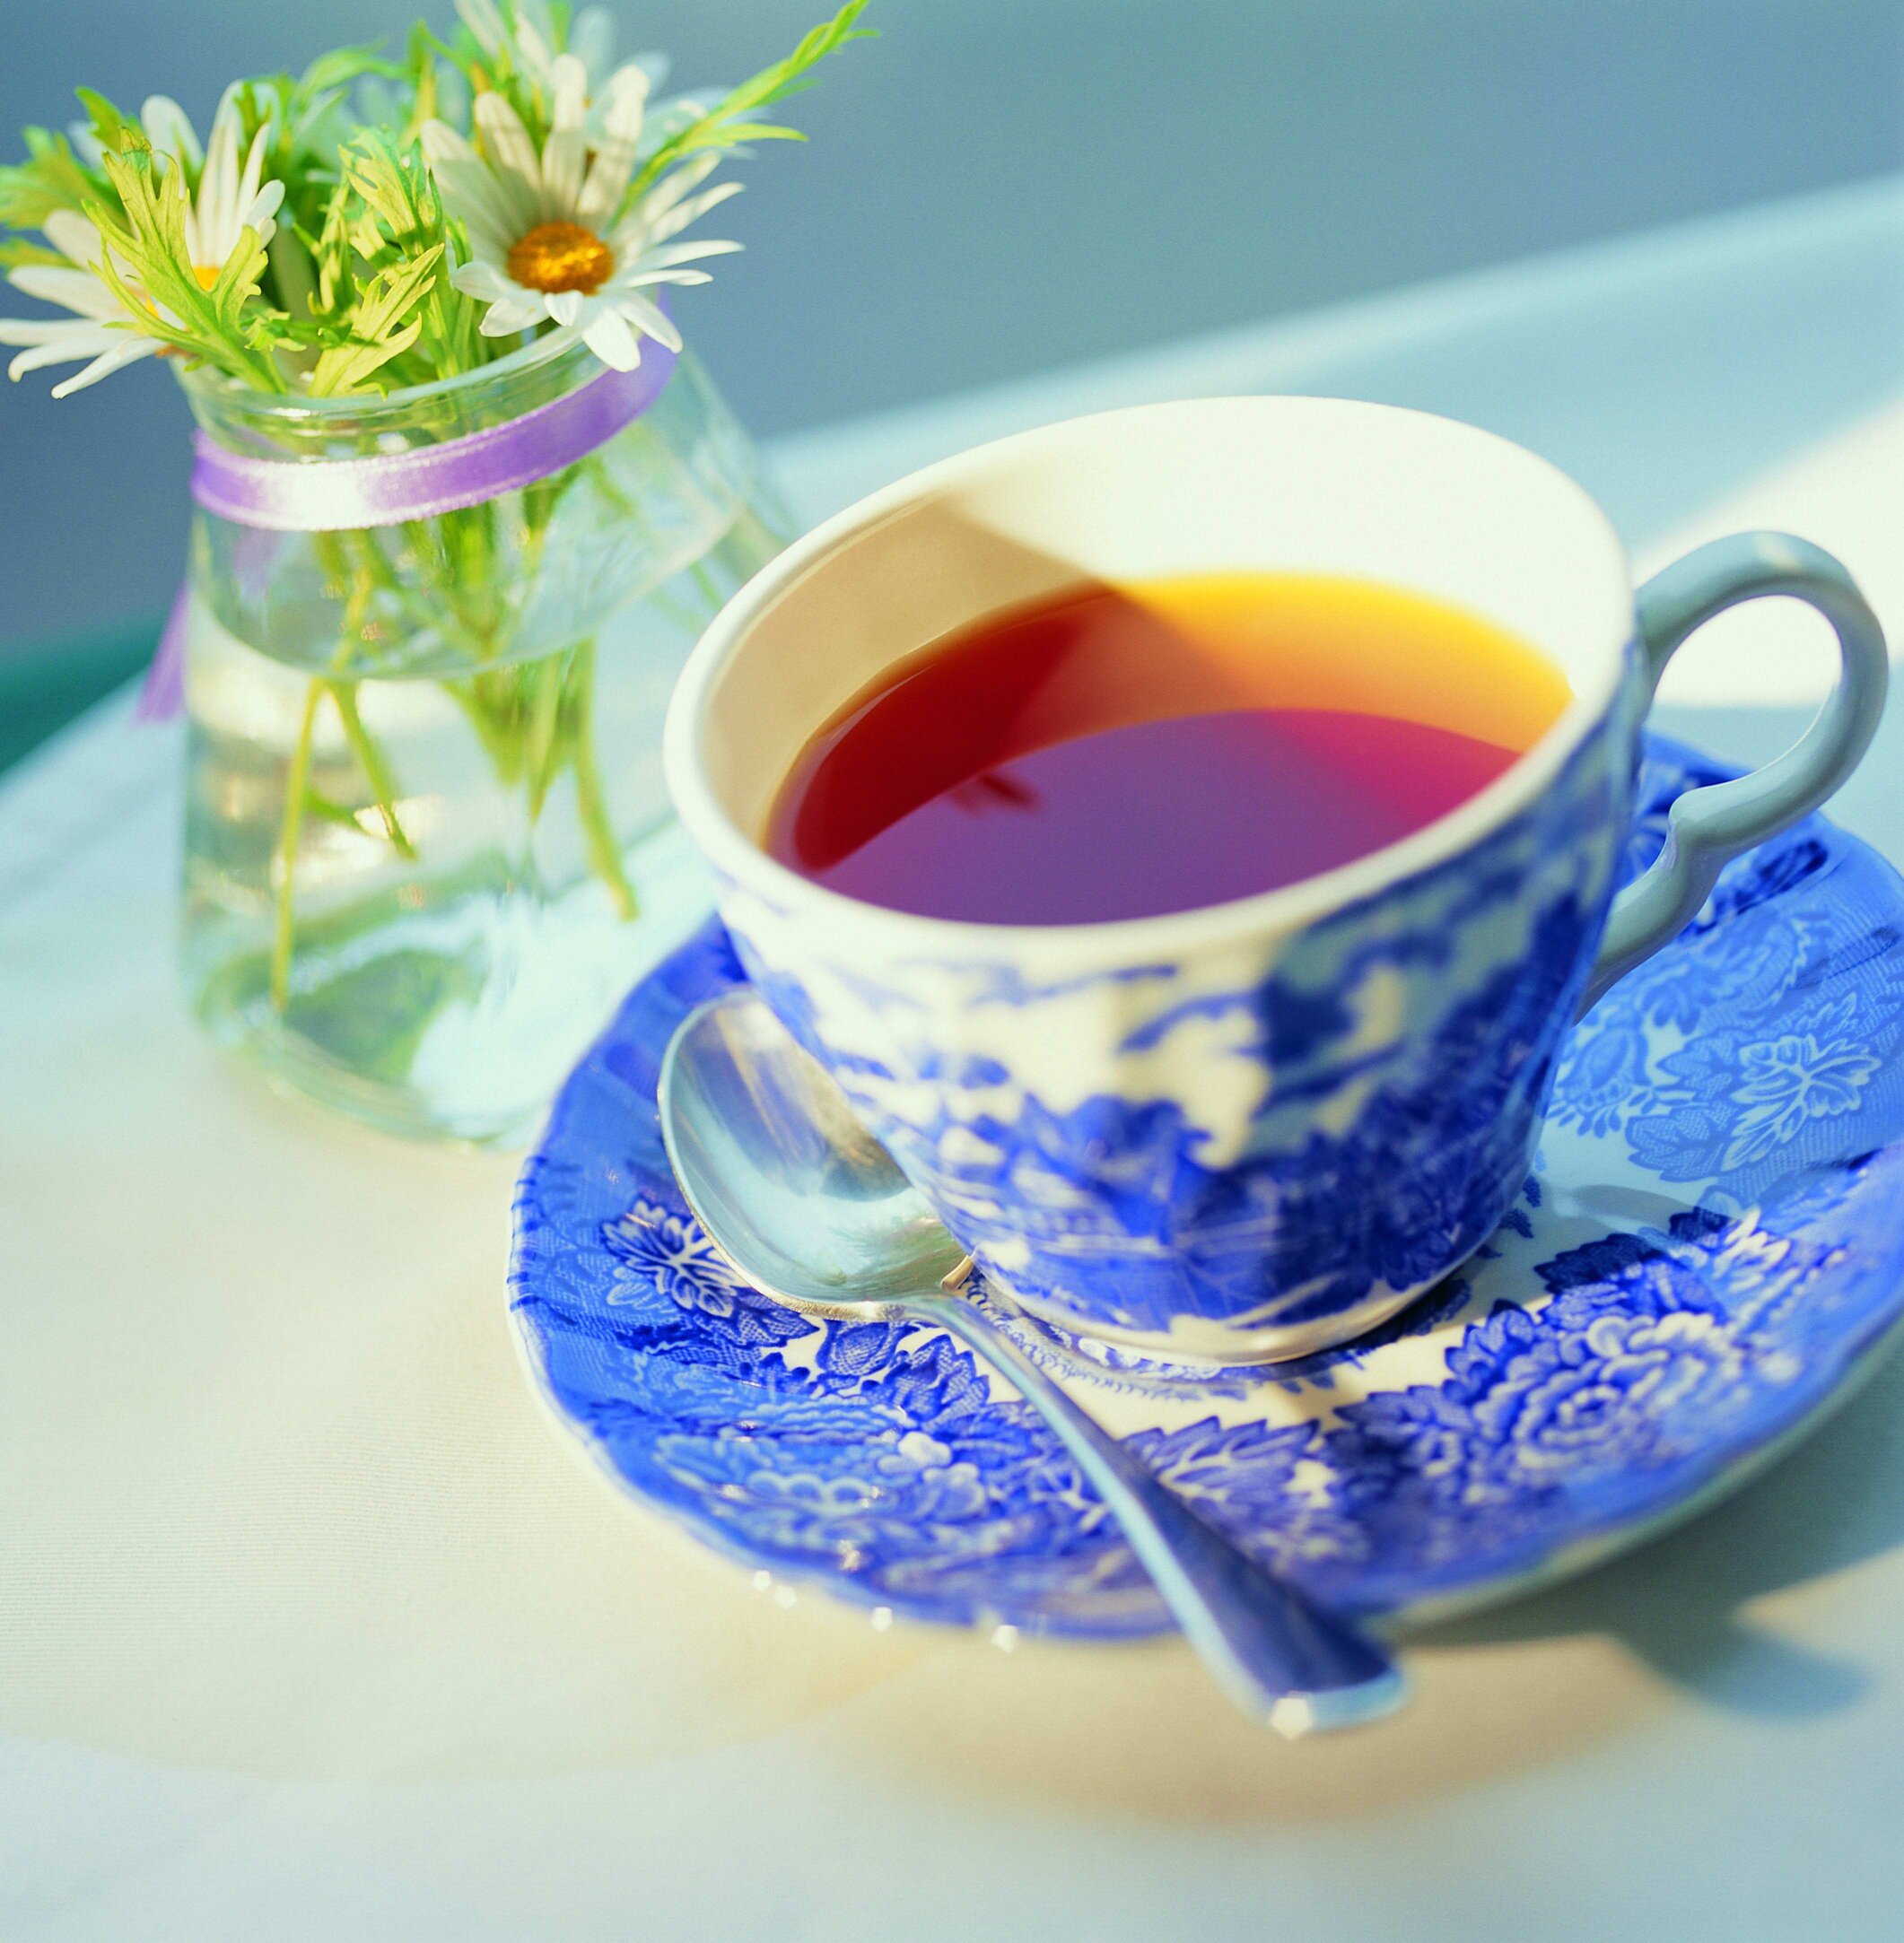 安吉白茶获批2019年首批全国农产品地理标志登记产品